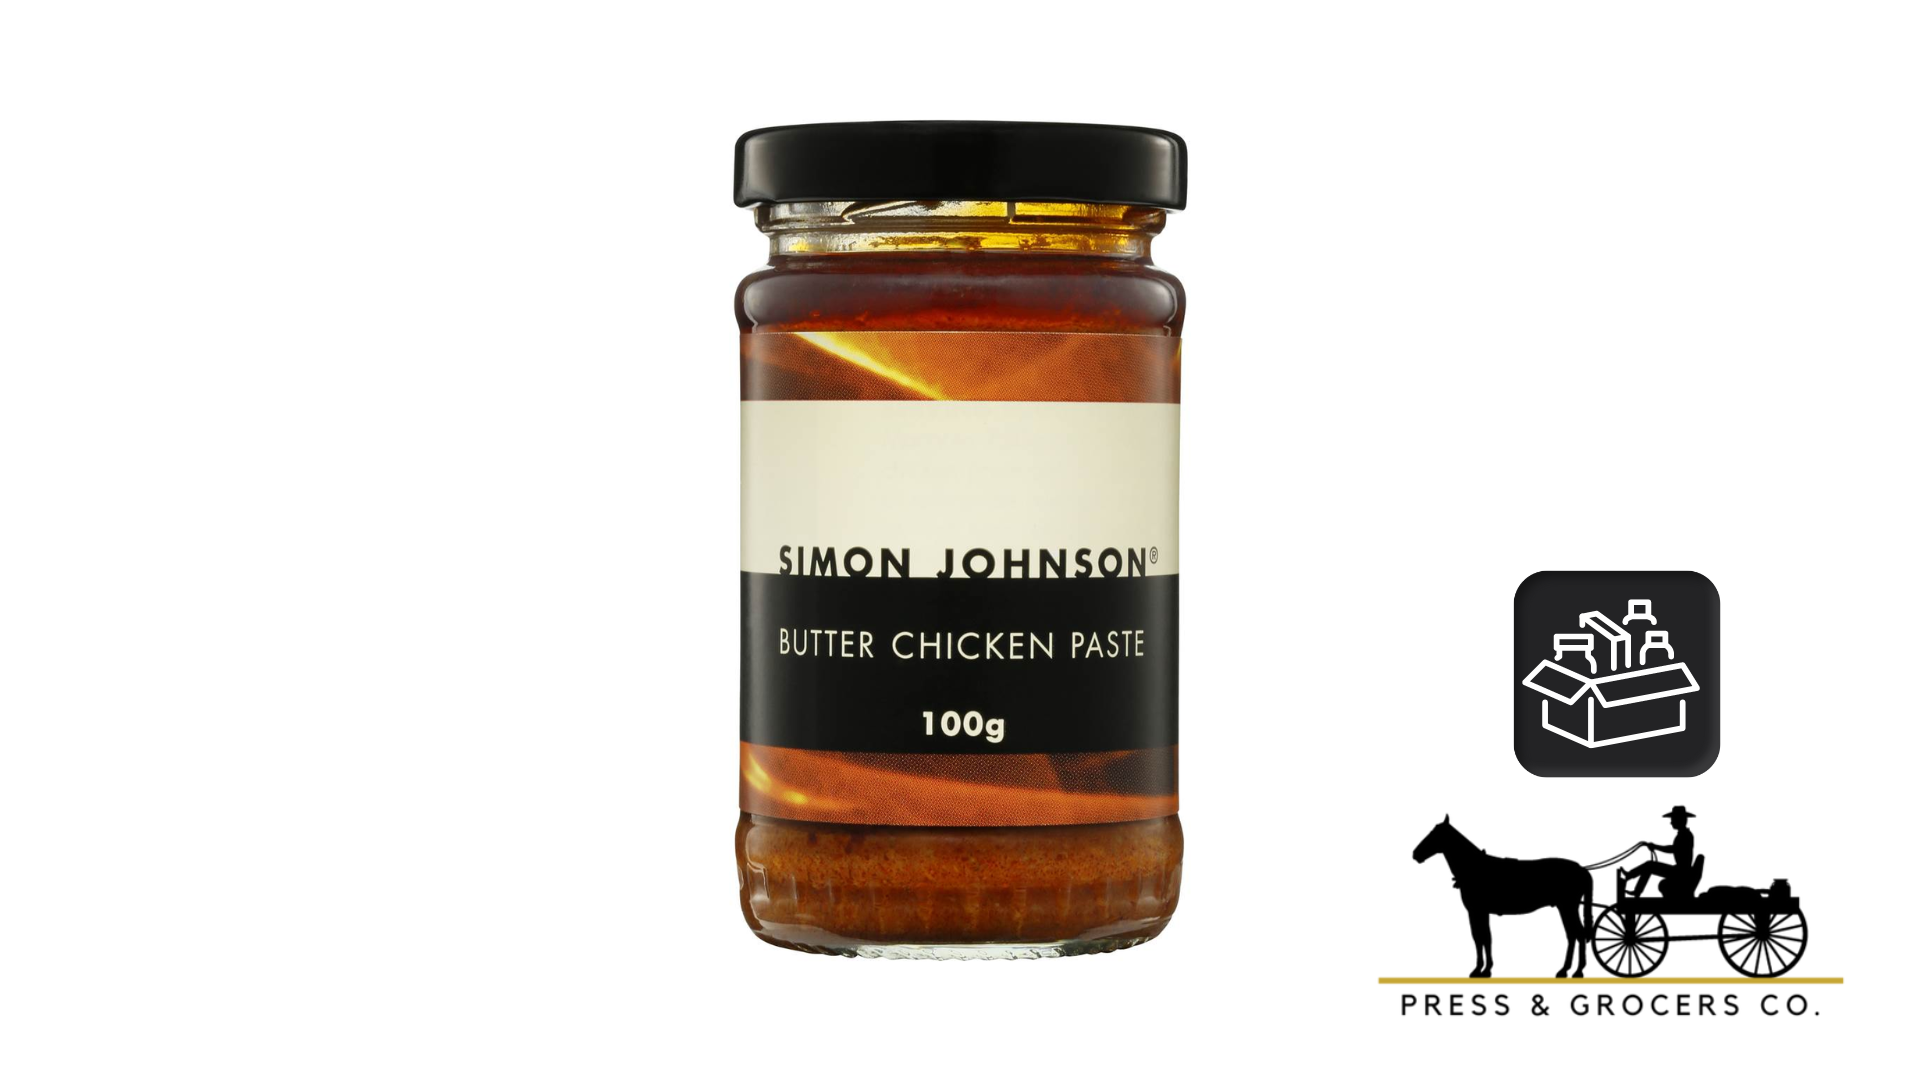 Simon Johnson Butter Chicken Paste 100g